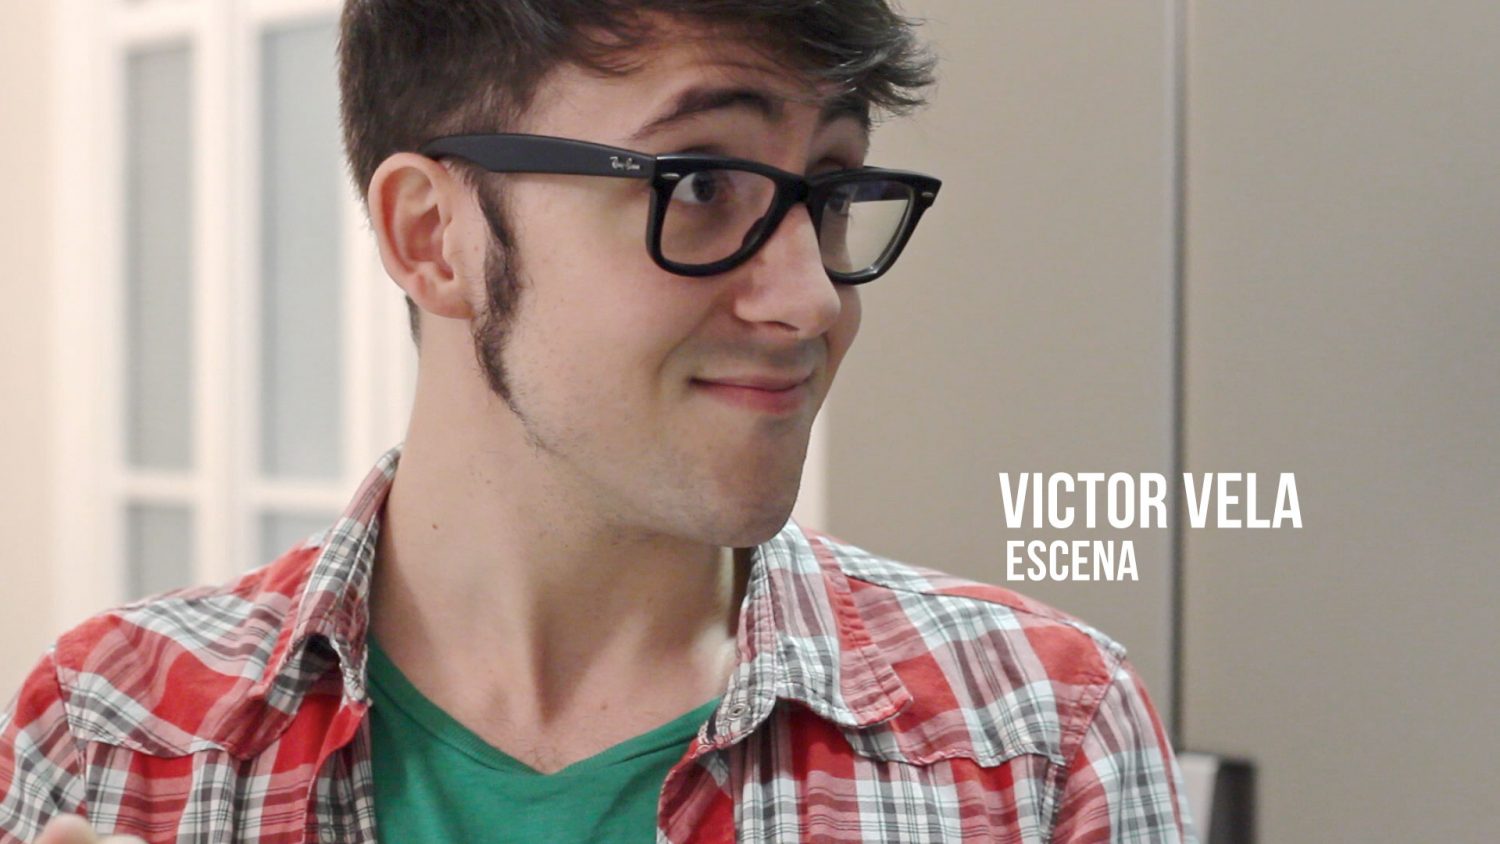 Victor Vela - Escena Actor